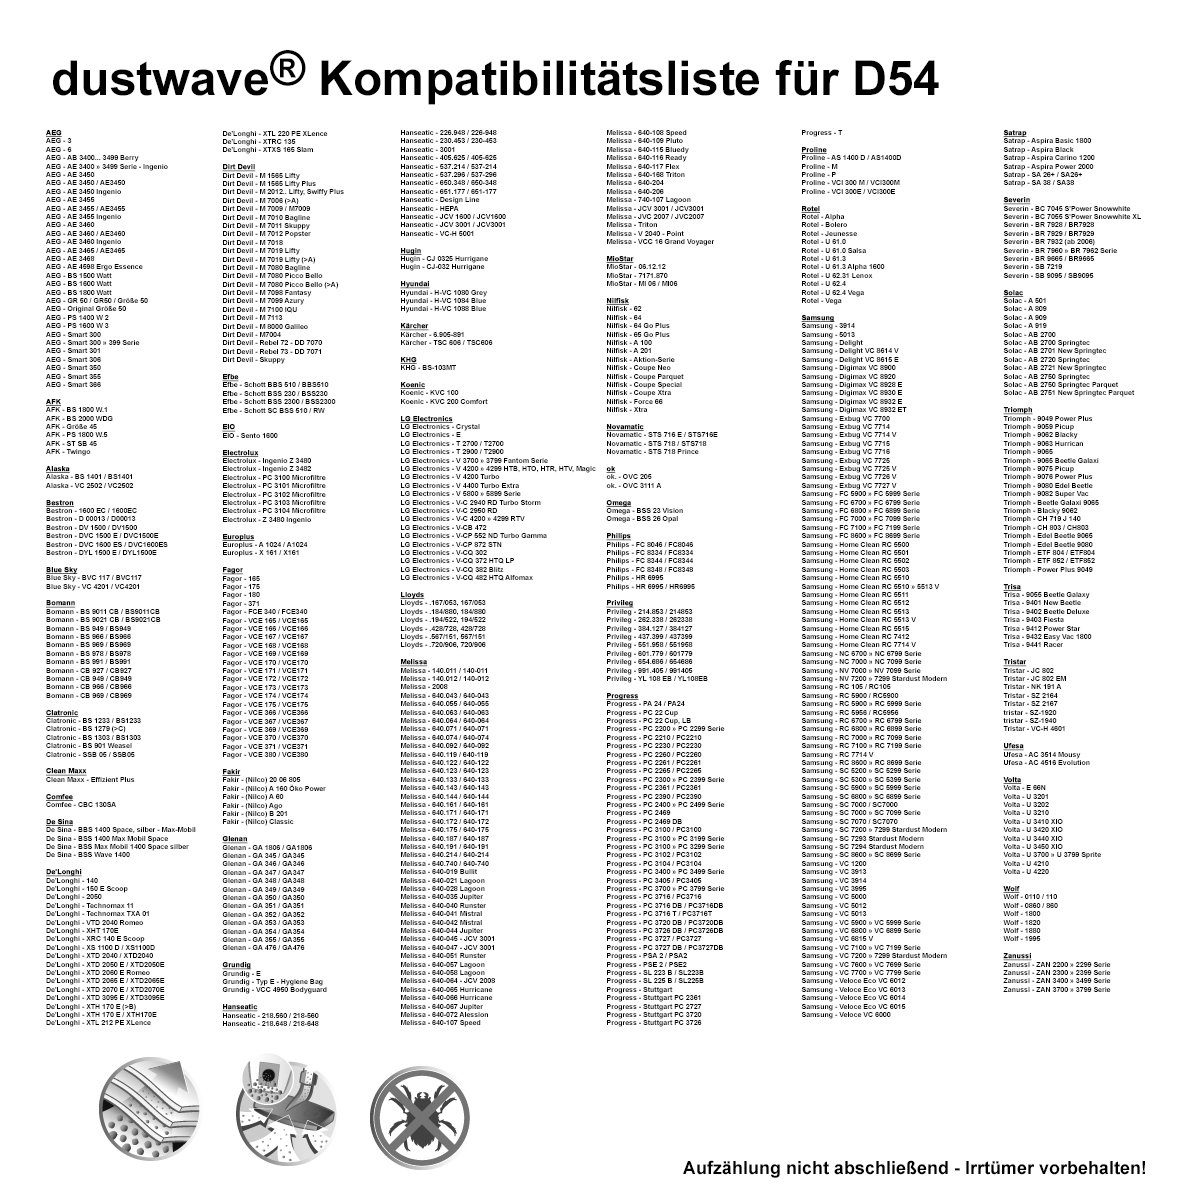 Dustwave Staubsaugerbeutel Test-Set, 1 AmazonBasics 1 (ca. - - + für Standard AmazonBasics Staubsaugerbeutel zuschneidbar) W31 15x15cm Hepa-Filter passend W31, Test-Set, 1 St